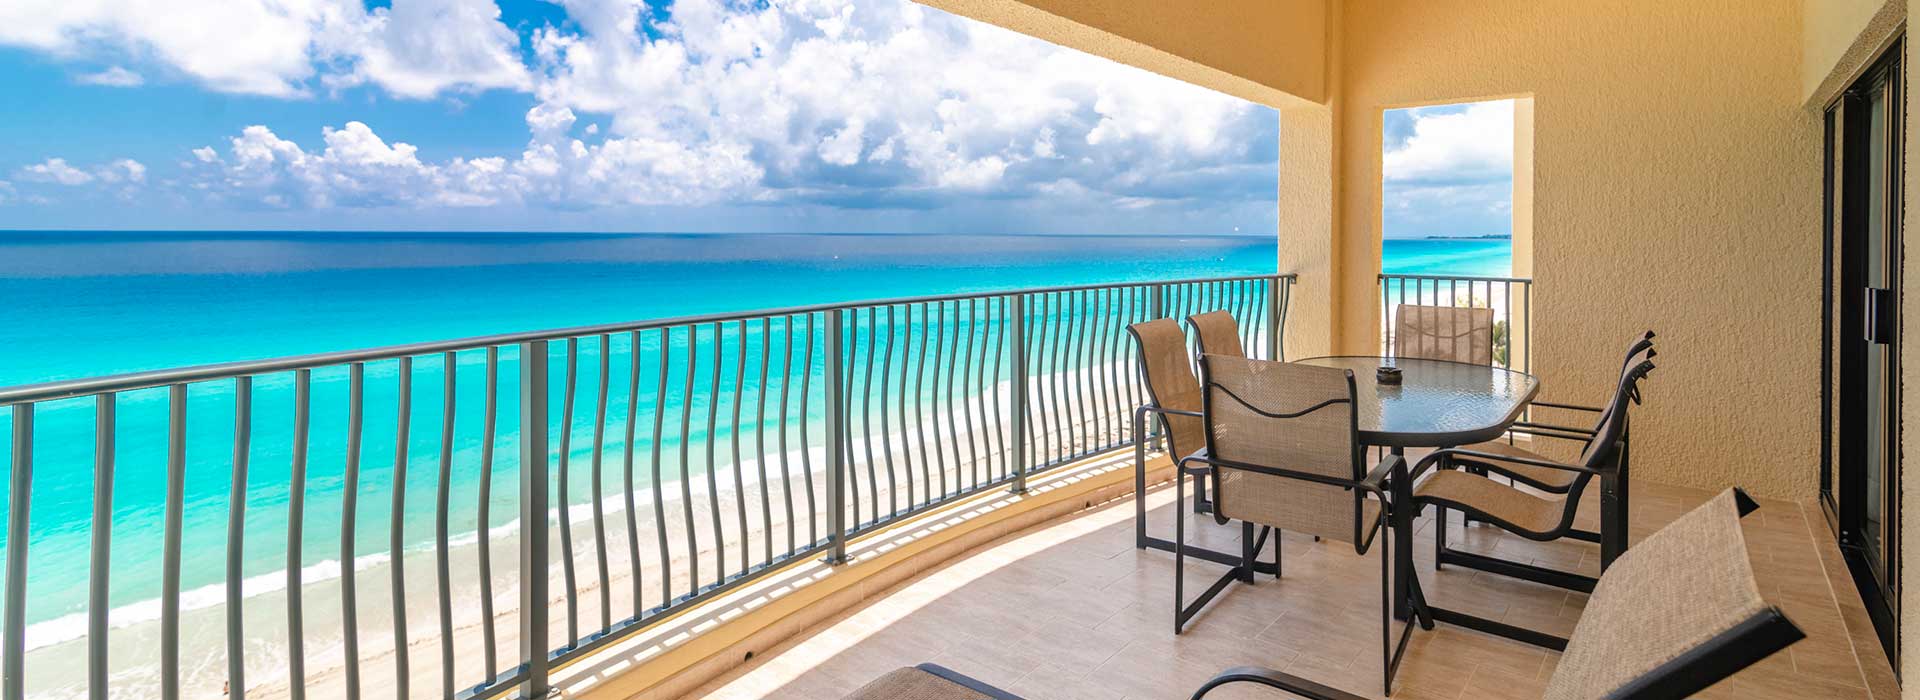 Amenidades de las villas frente al mar de una recámara para sus vacaciones Todo Incluido en Cancun